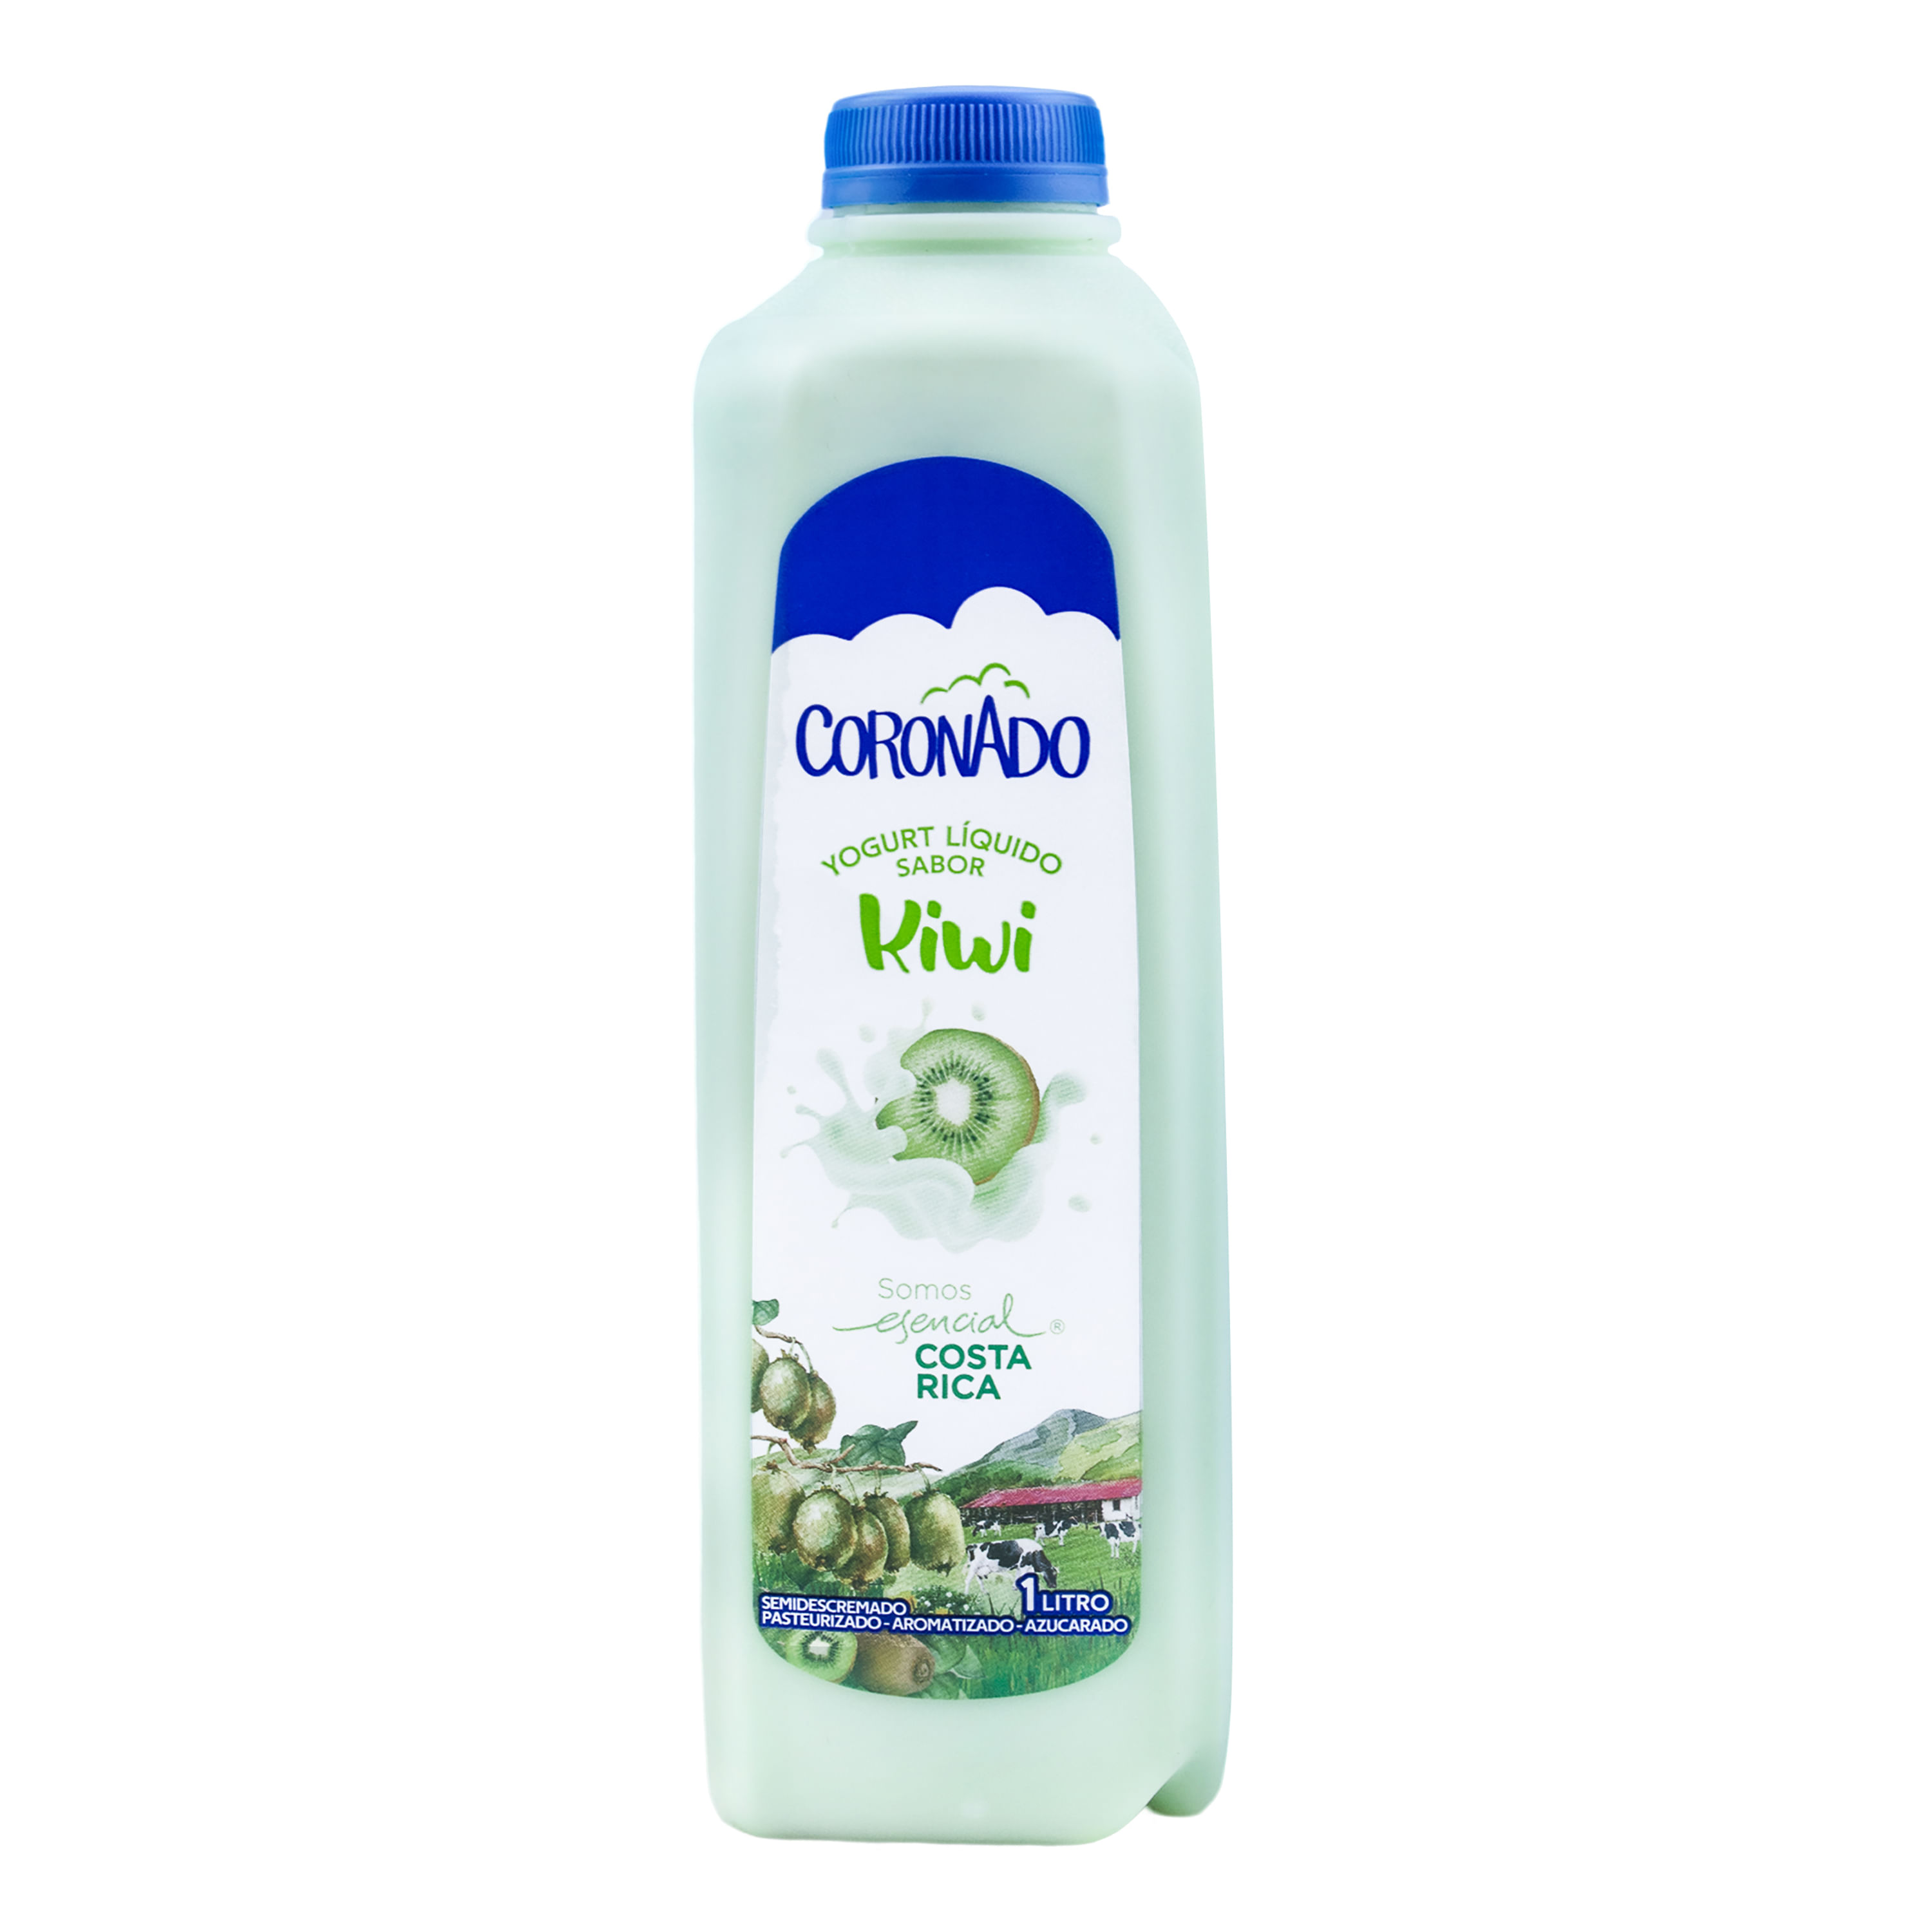 Comprar Yogurt Líquido Coronado Sabor Kiwi, Semidescremado - 1Lt, Walmart  Costa Rica - Maxi Palí